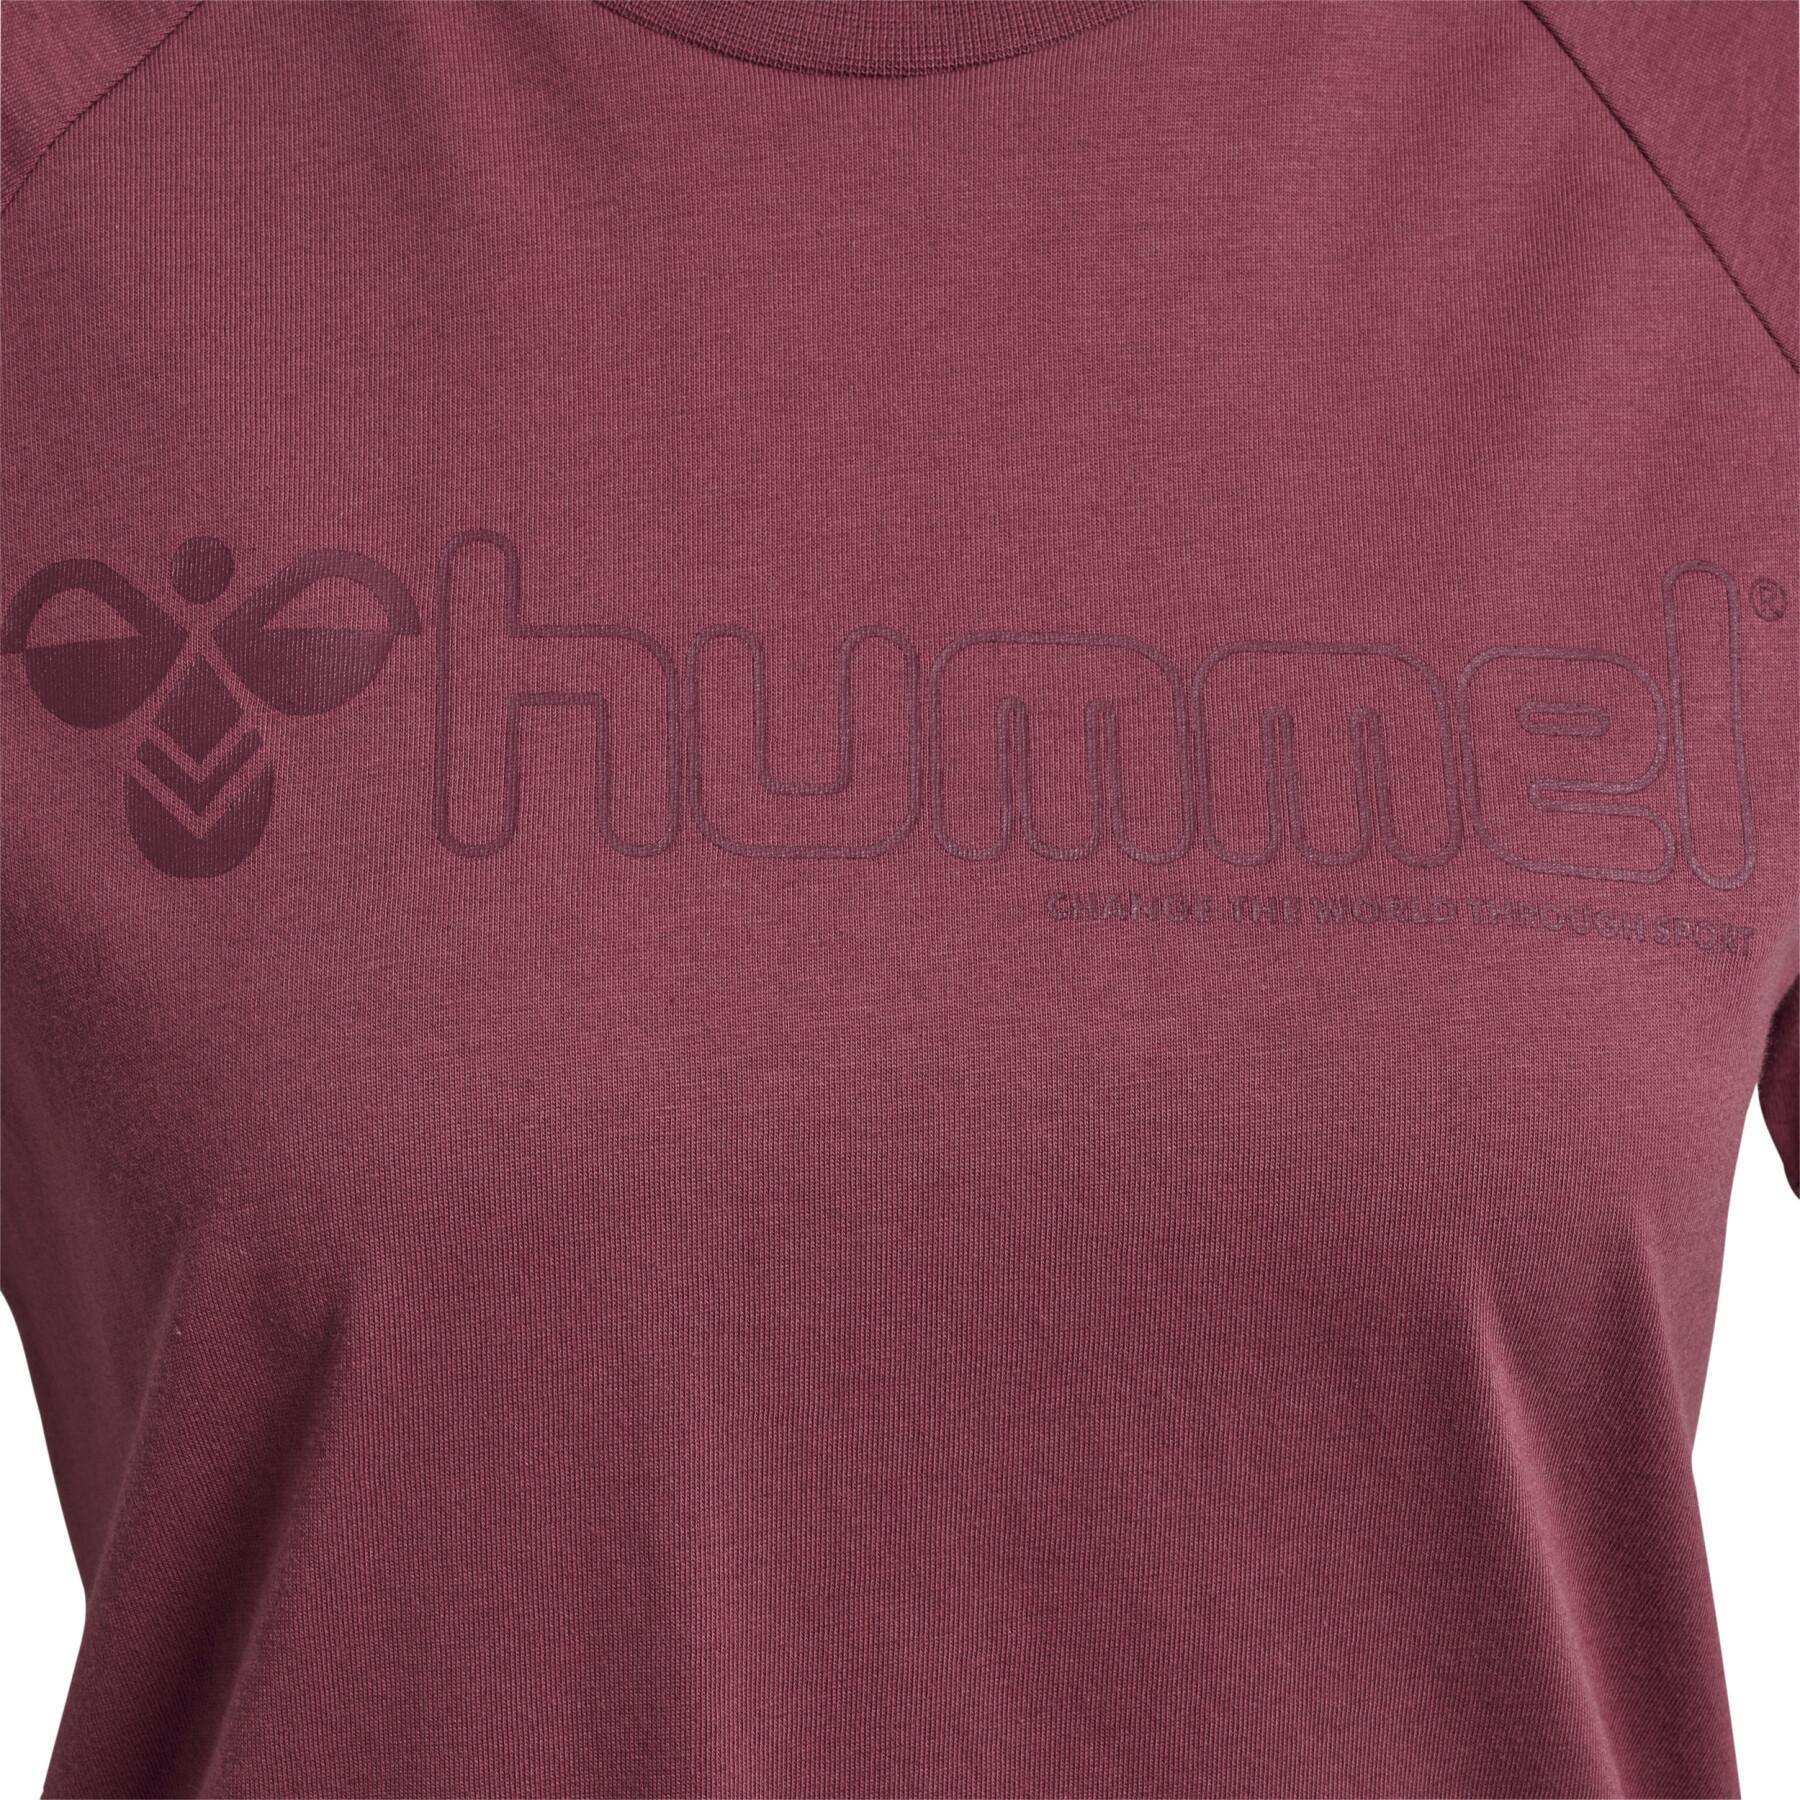 T-shirt för kvinnor Hummel Noni 2.0